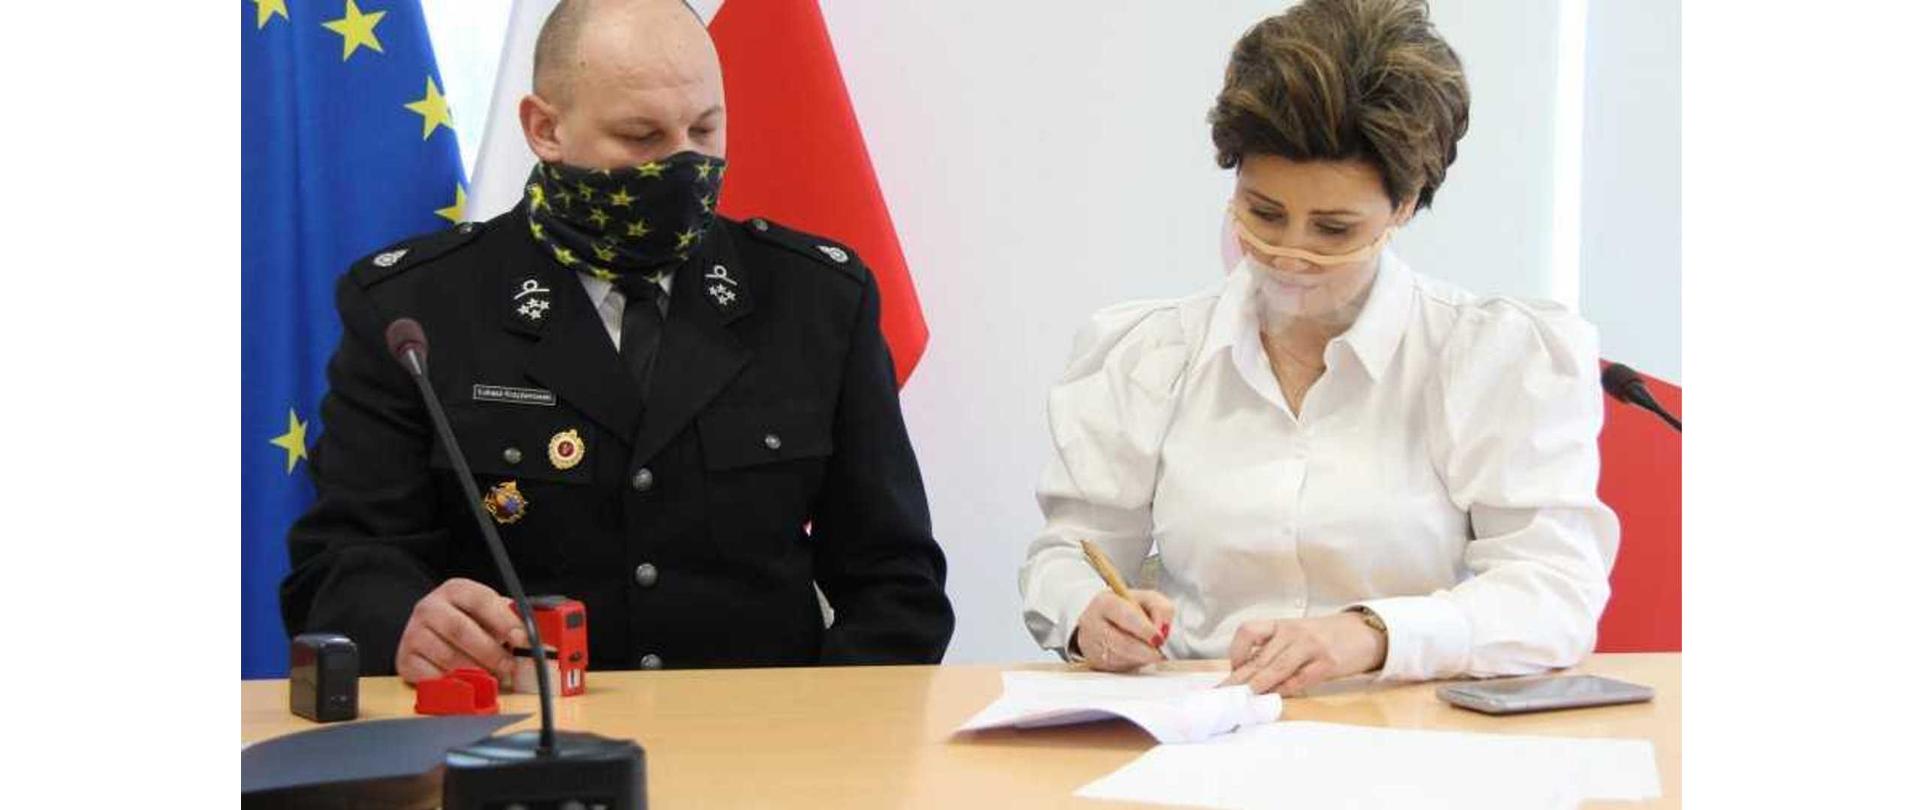 Strażak z OSP Skarżyn oraz Burmistrz Białej Piskiej siedzący przy biurku. Burmistrz Białej Piskiej podpisuje dokumenty dotyczące przekazania sprzętu ratowniczego jednostce OSP.